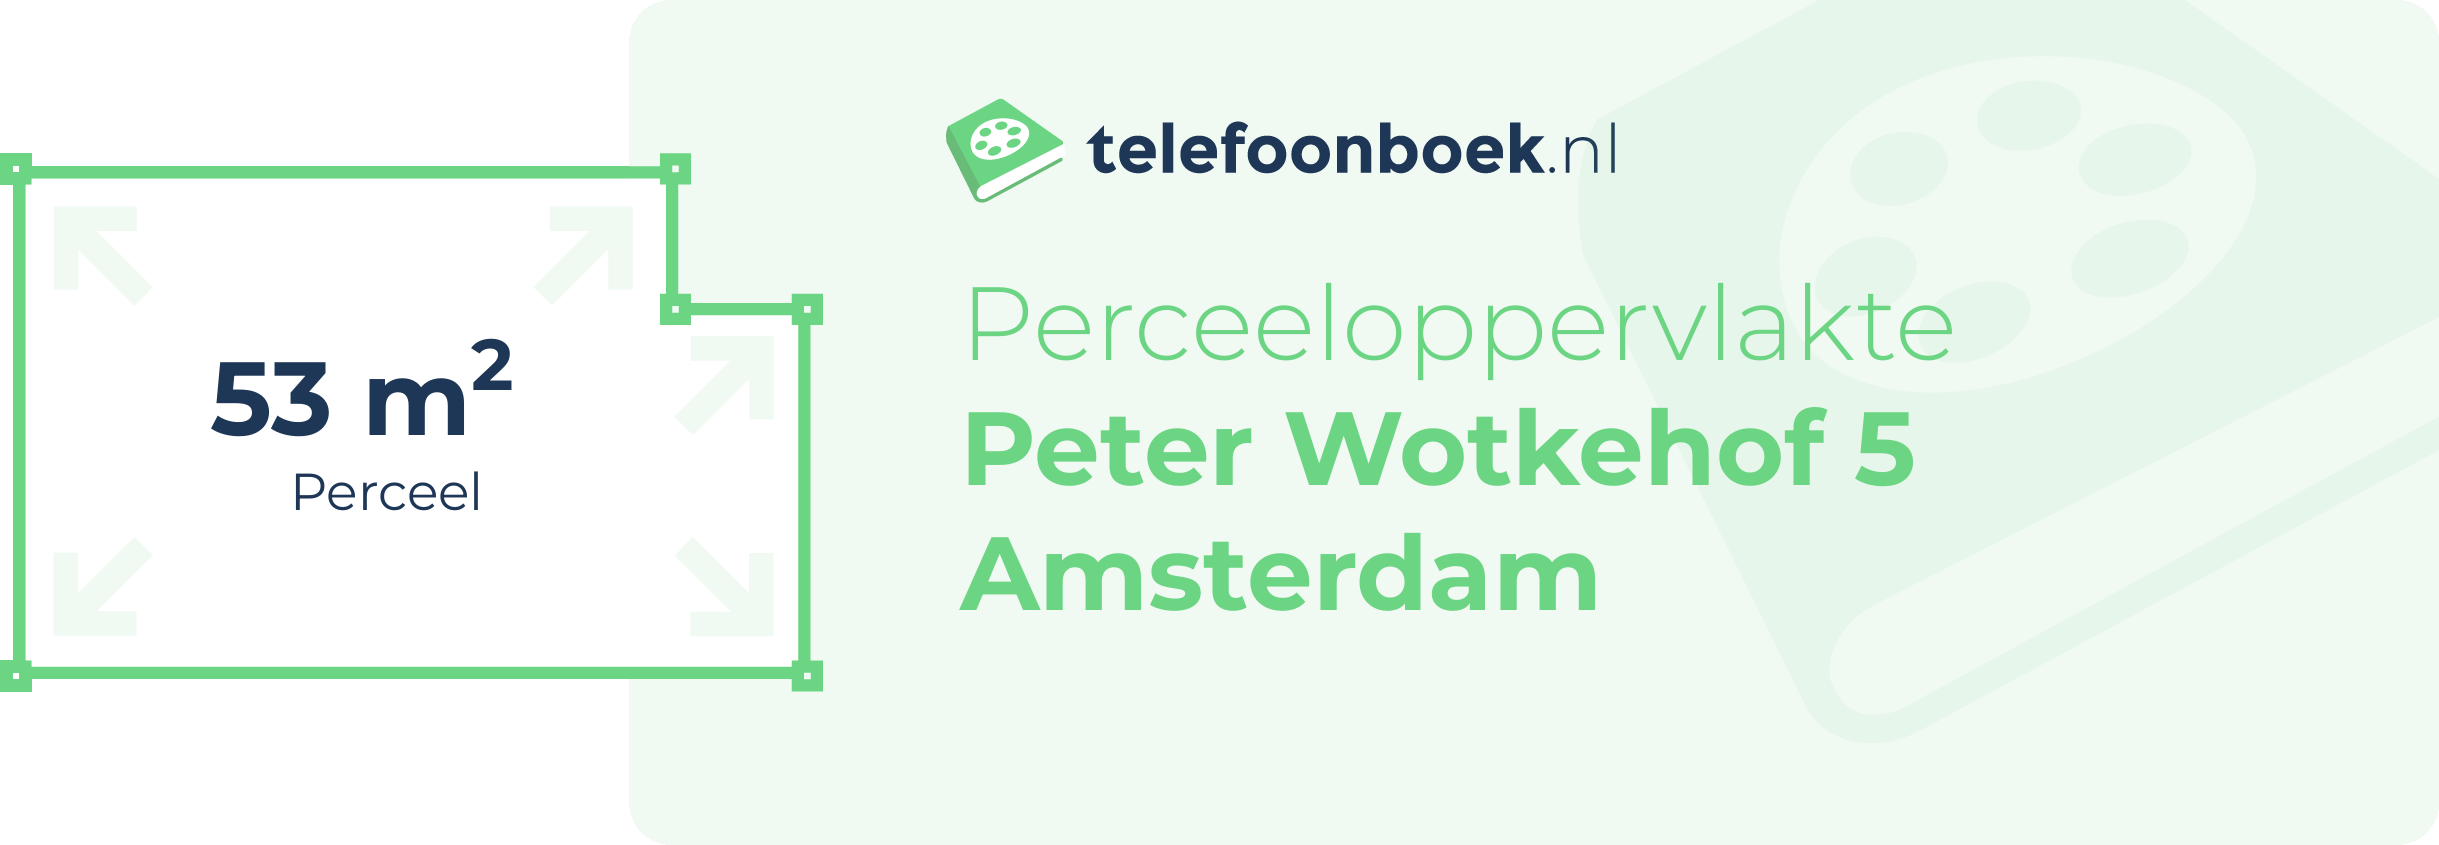 Perceeloppervlakte Peter Wotkehof 5 Amsterdam